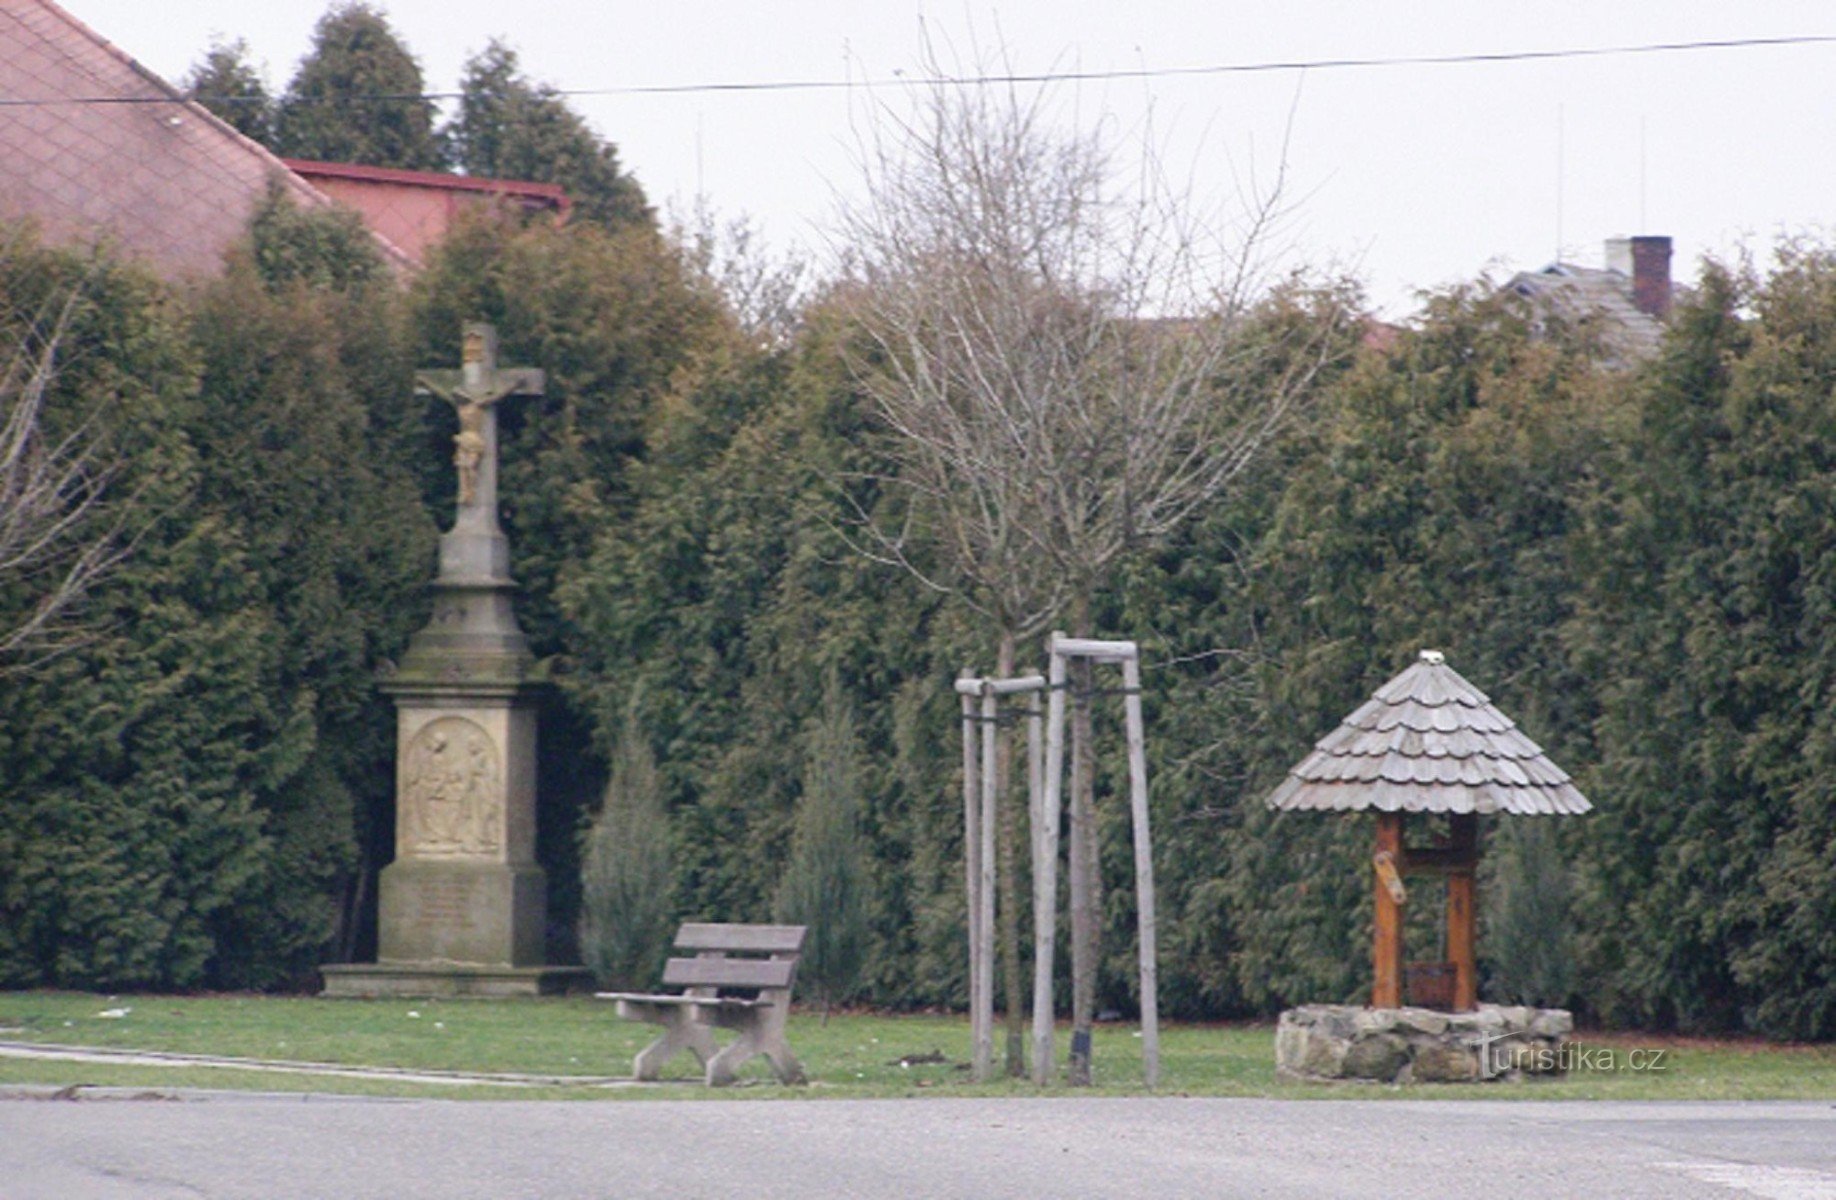 Dobrá Voda perto de Hořice - parque com um crucifixo